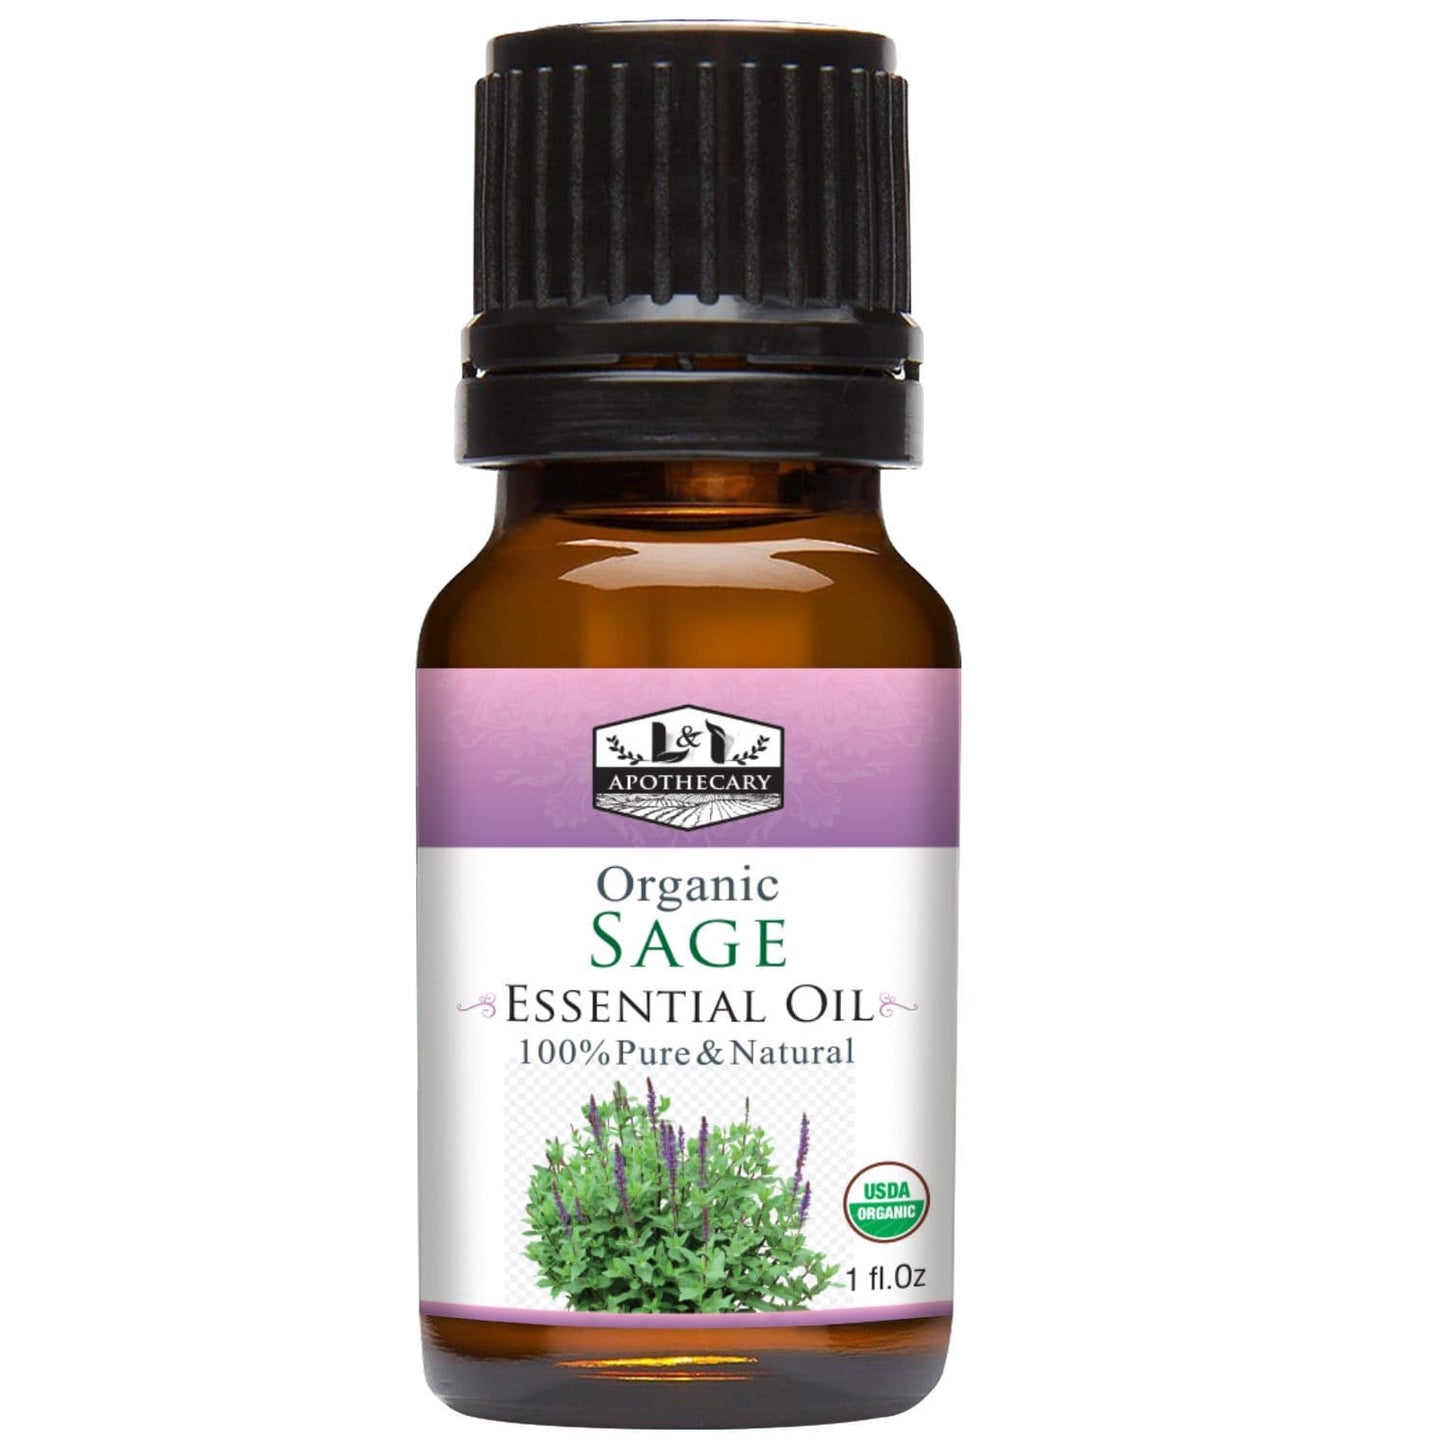 Organic Sage